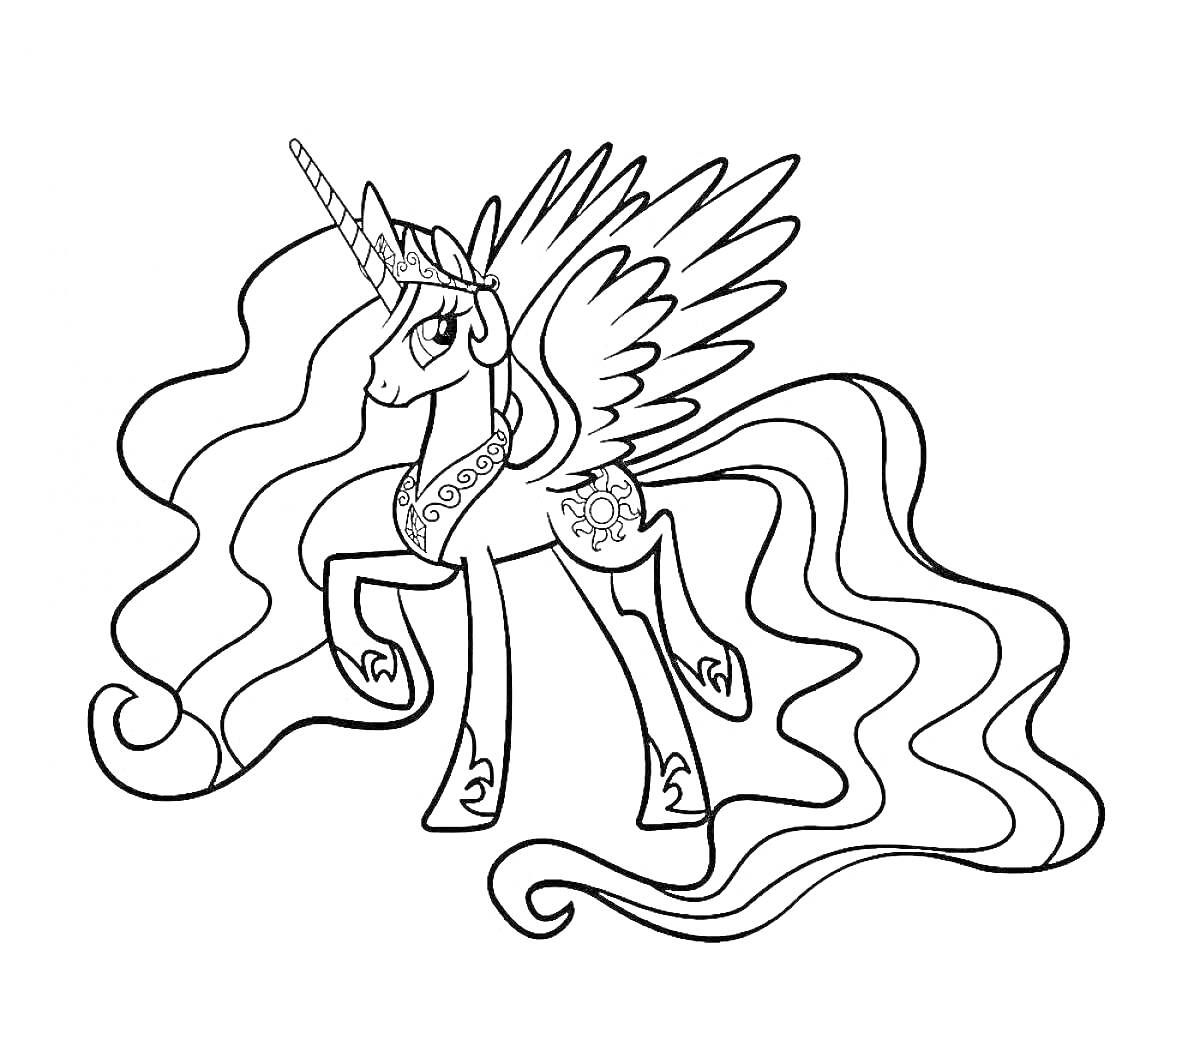 Раскраска Пони с длинной гривой, крыльями и короной на голове, изображение включает магический рог и узор солнца на боку